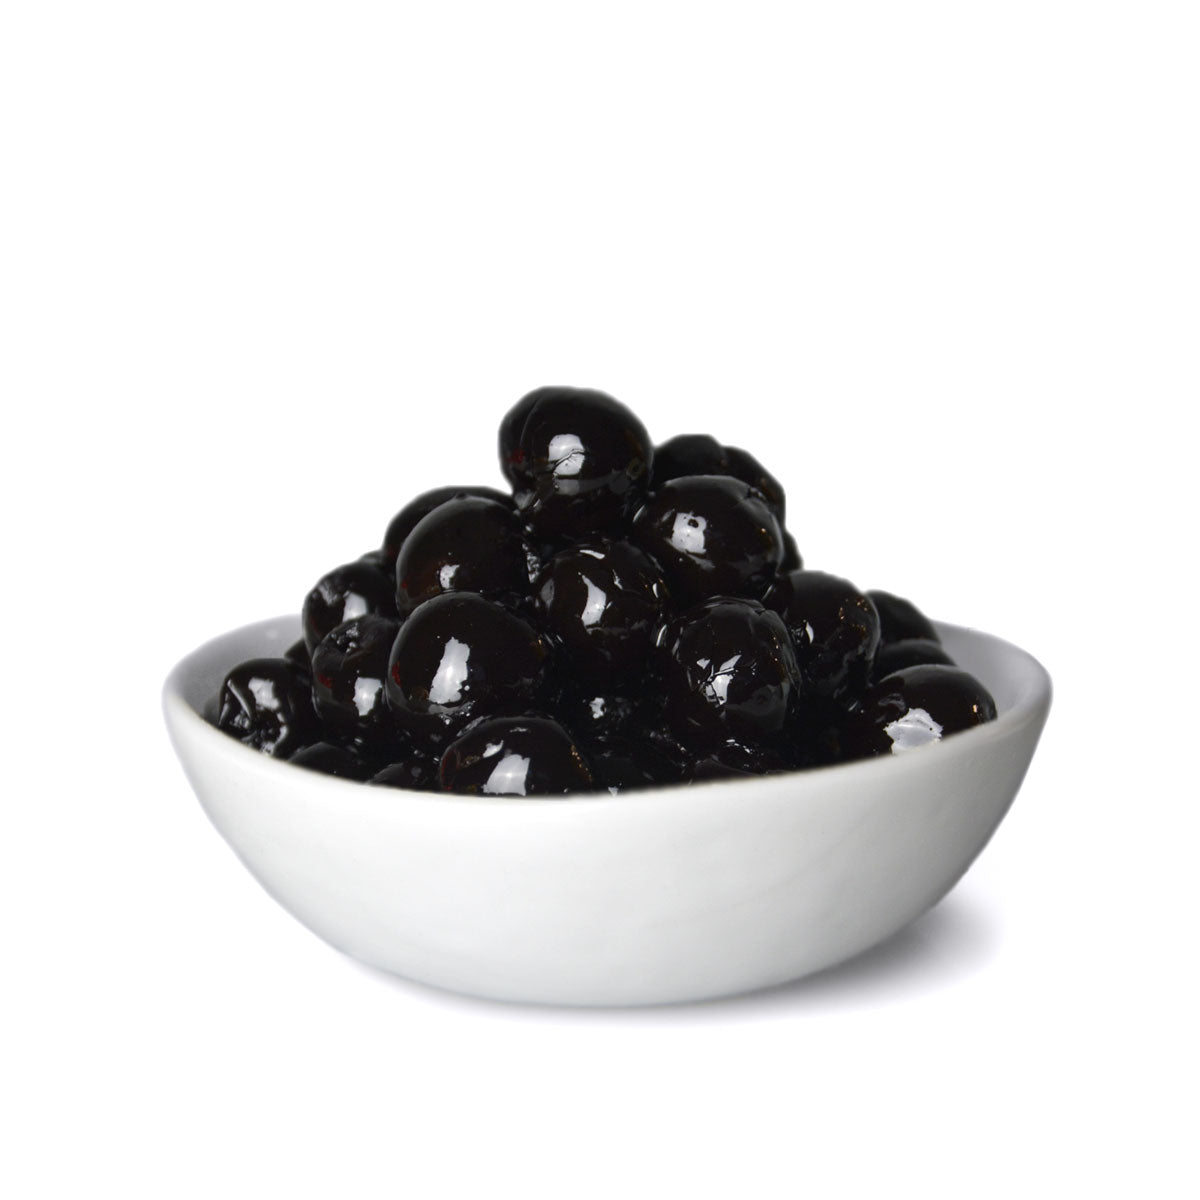 Amarena Cherries in bowl